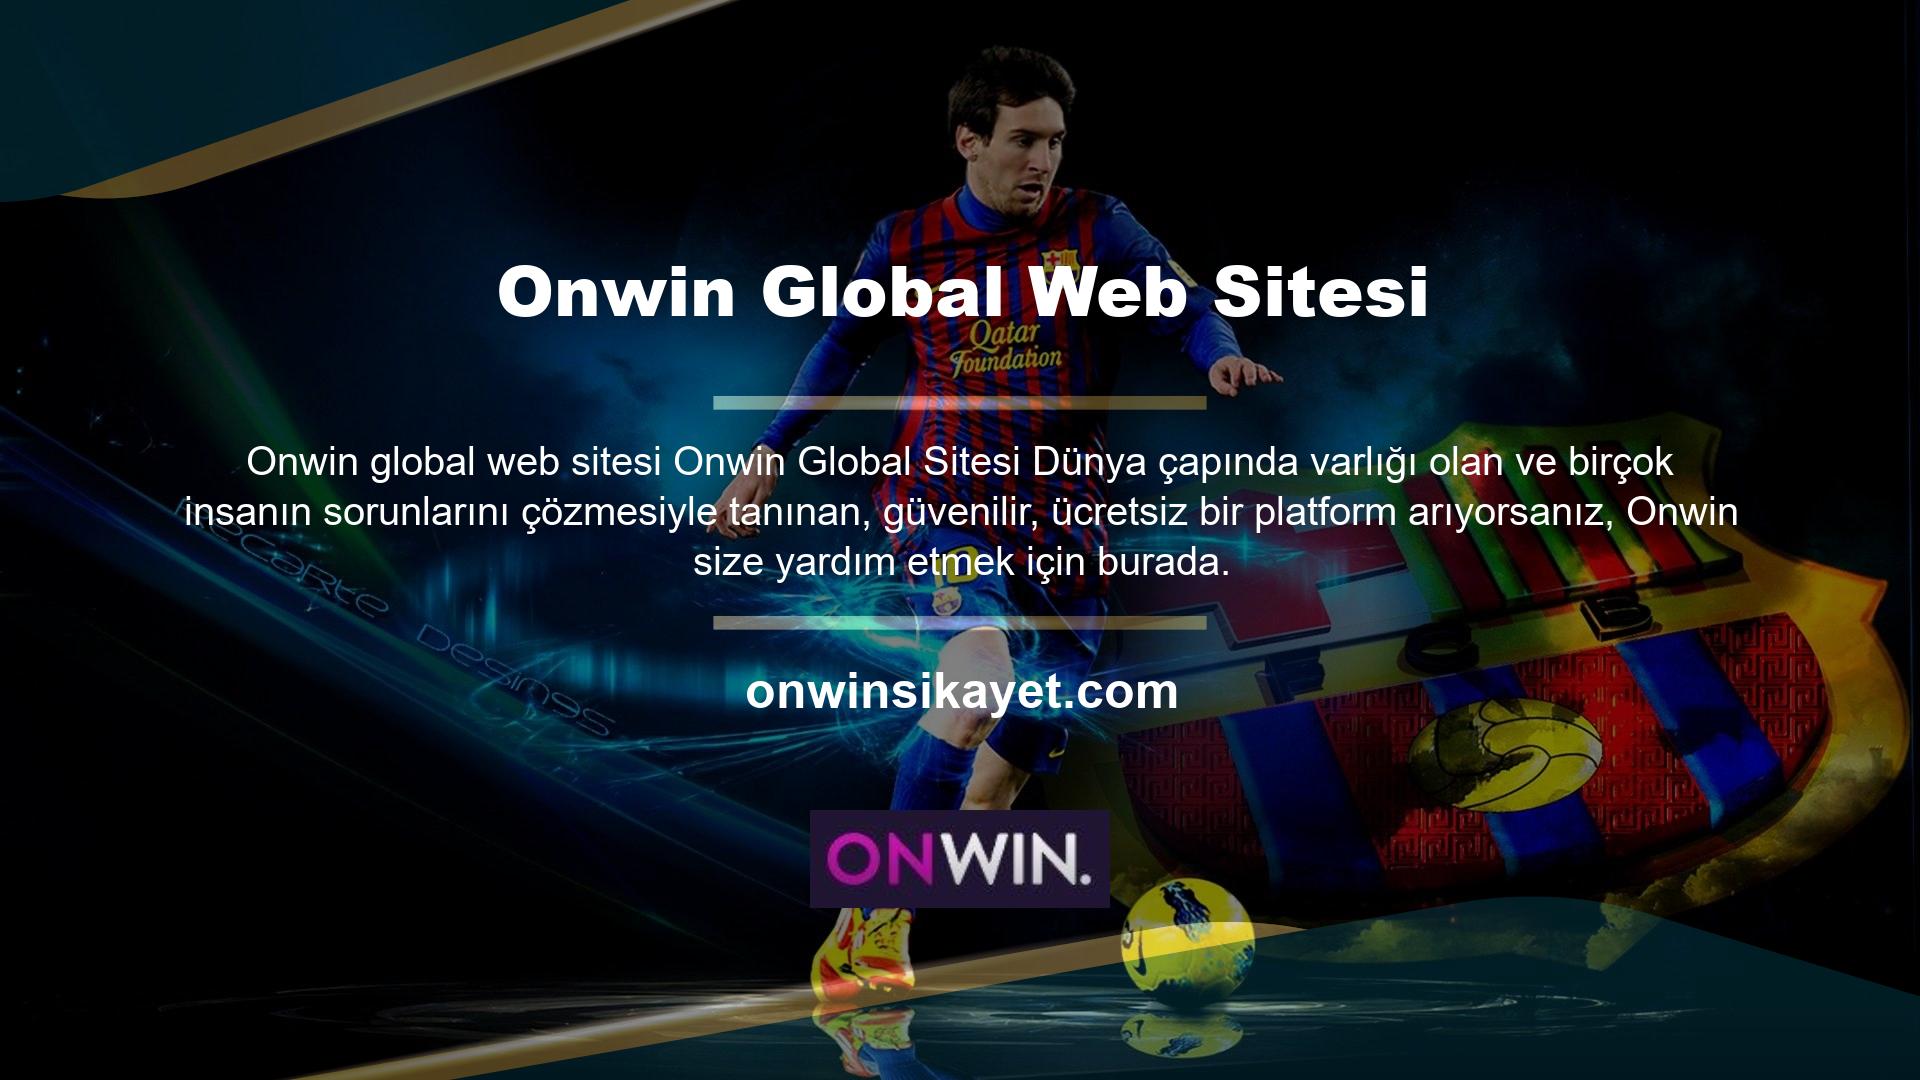 Onwin Global Web Sitesi olarak sizleri ağırlamaktan gurur duyuyoruz